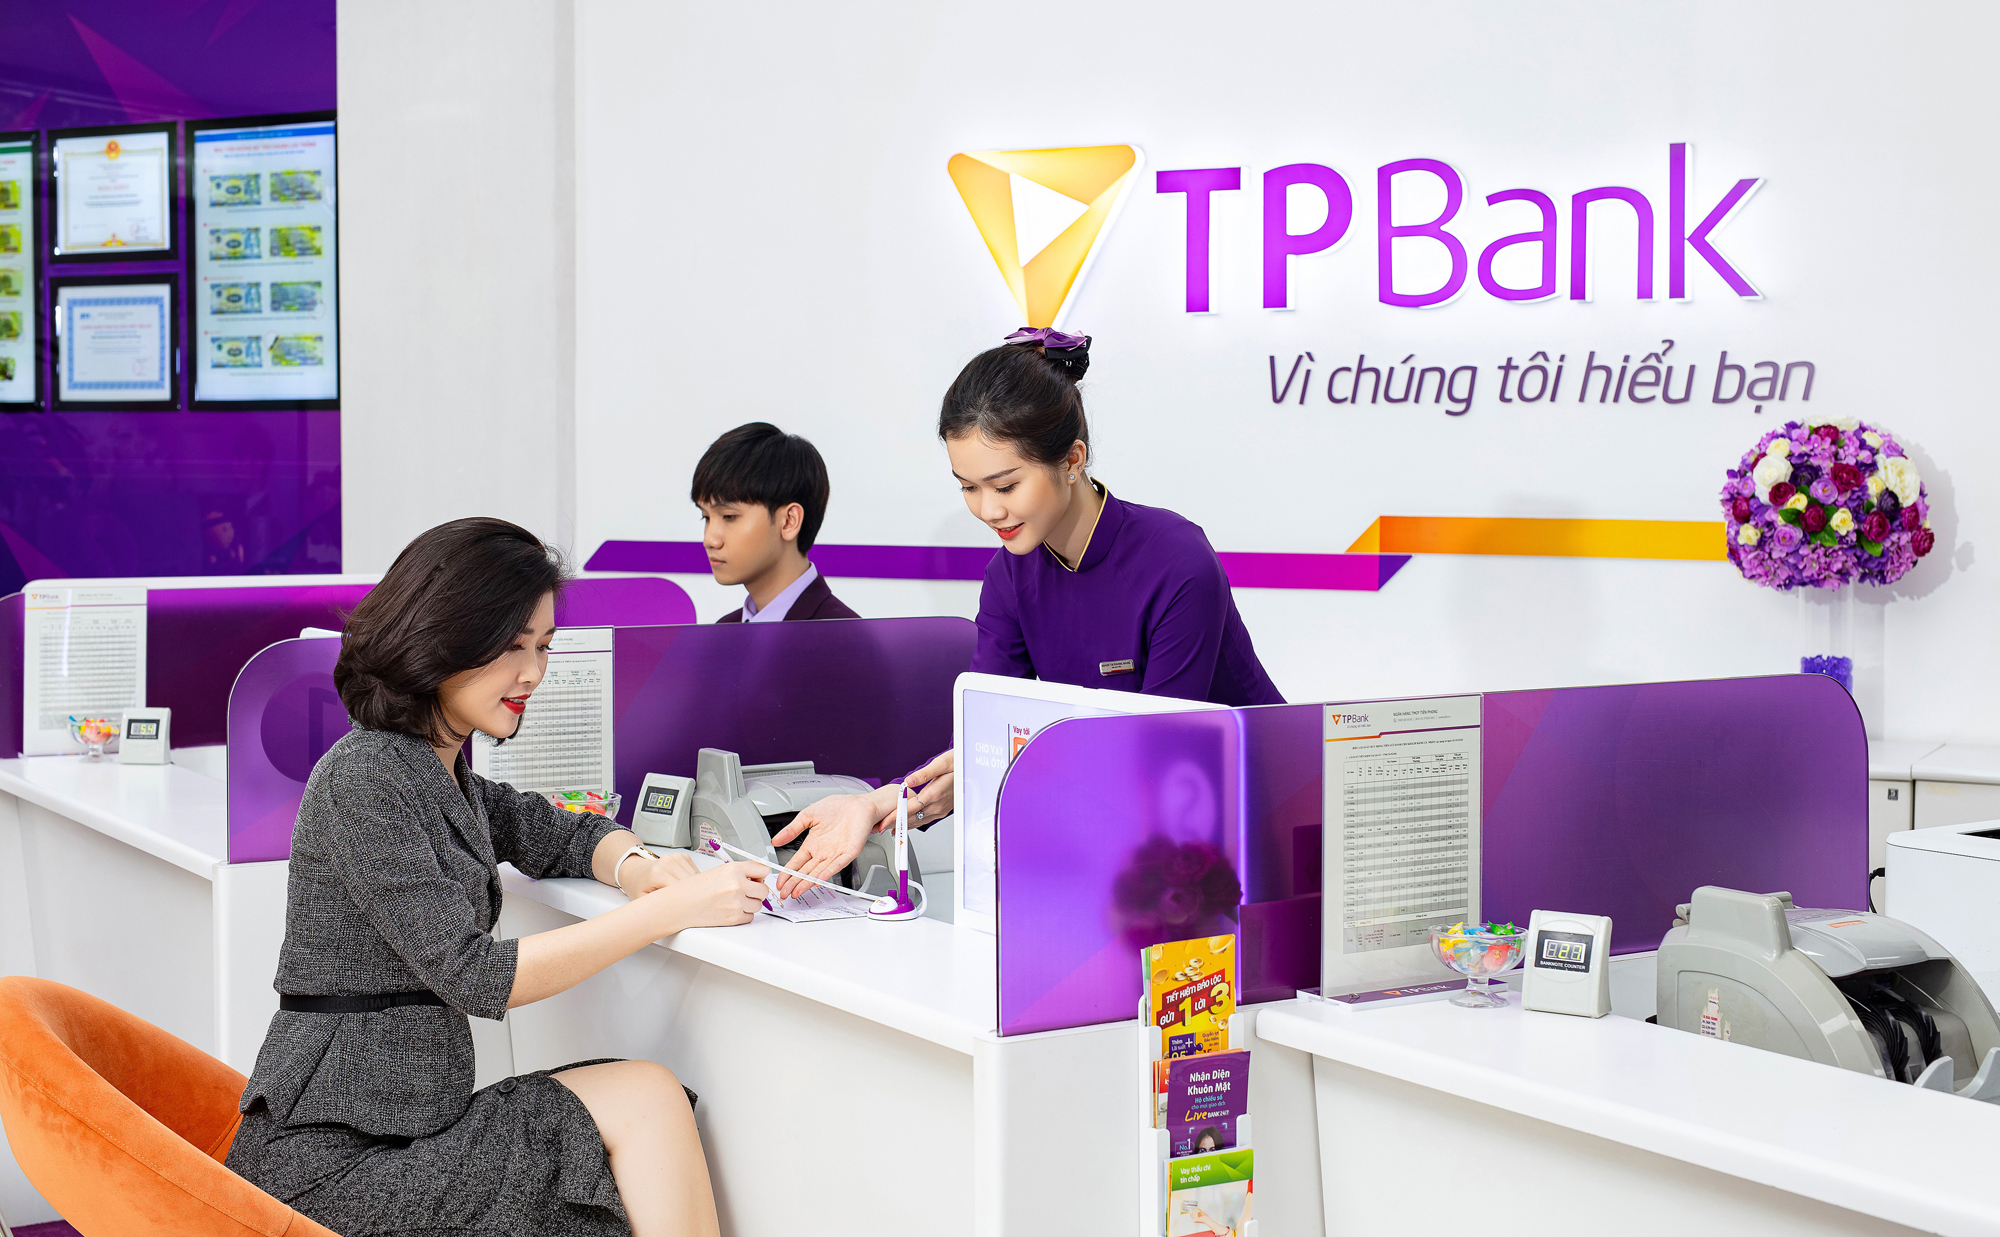 Mở tài khoản TPBank